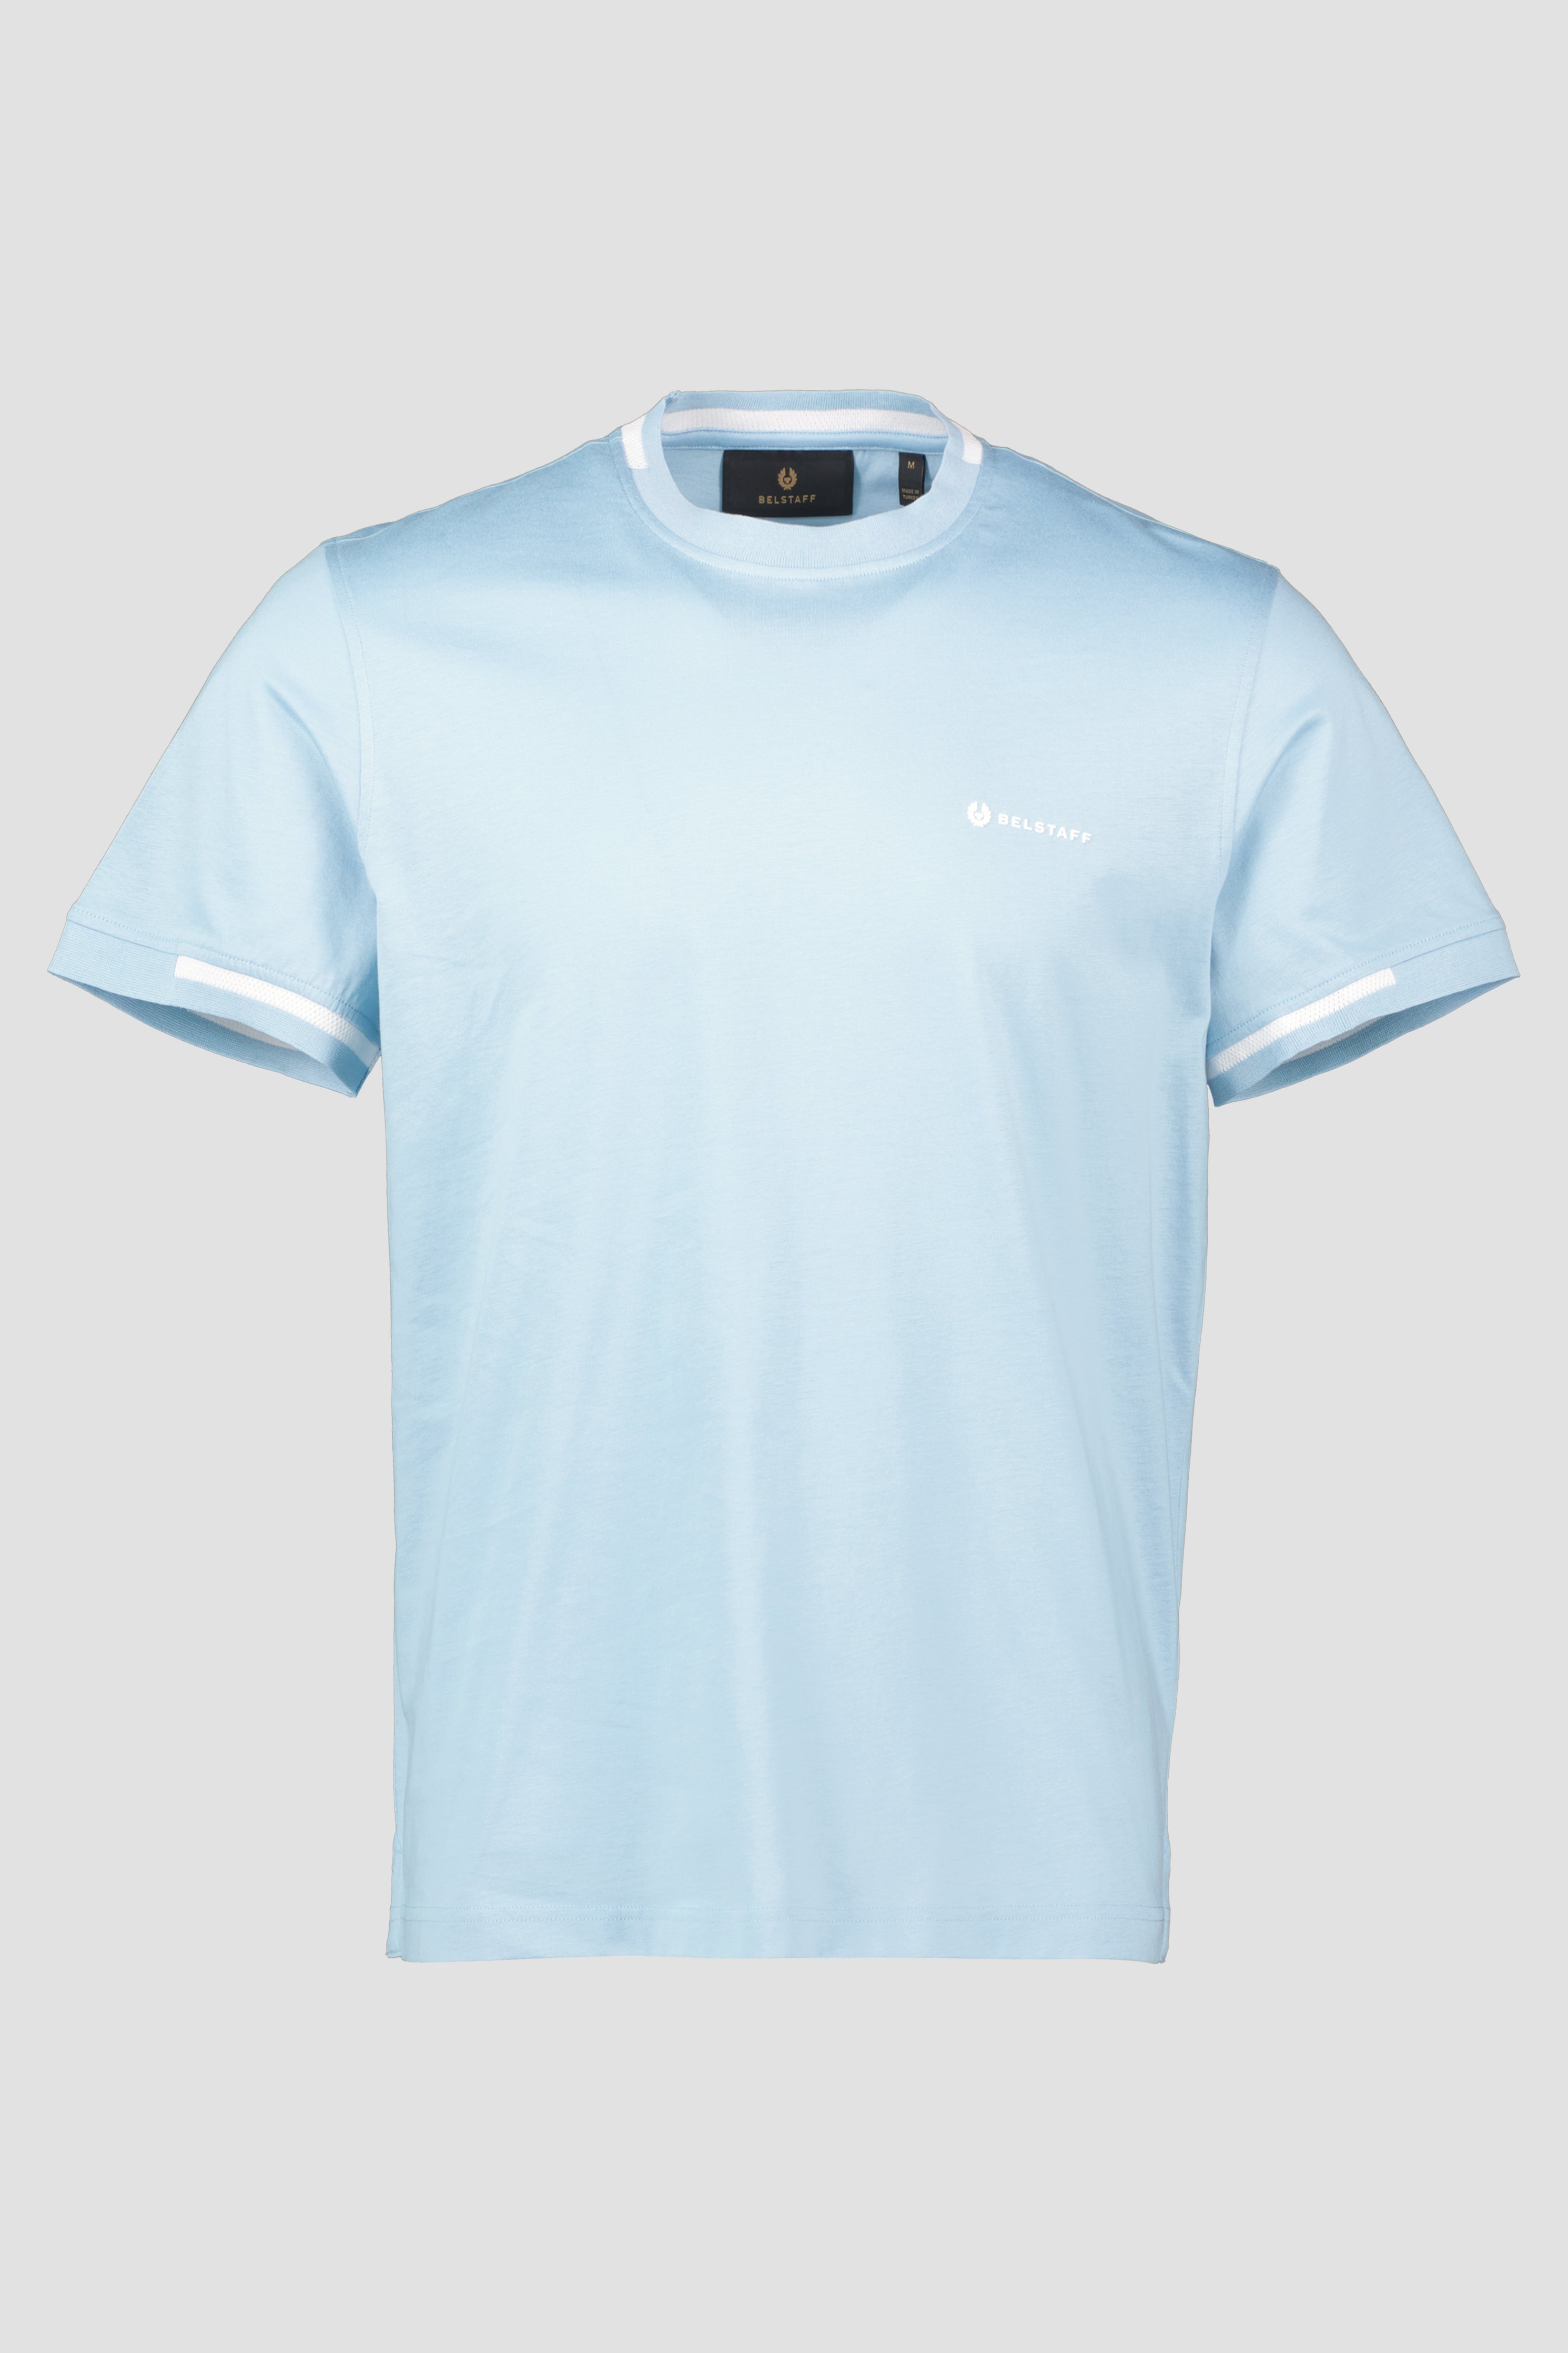 Men's Belstaff Skyline Blue T Shirt